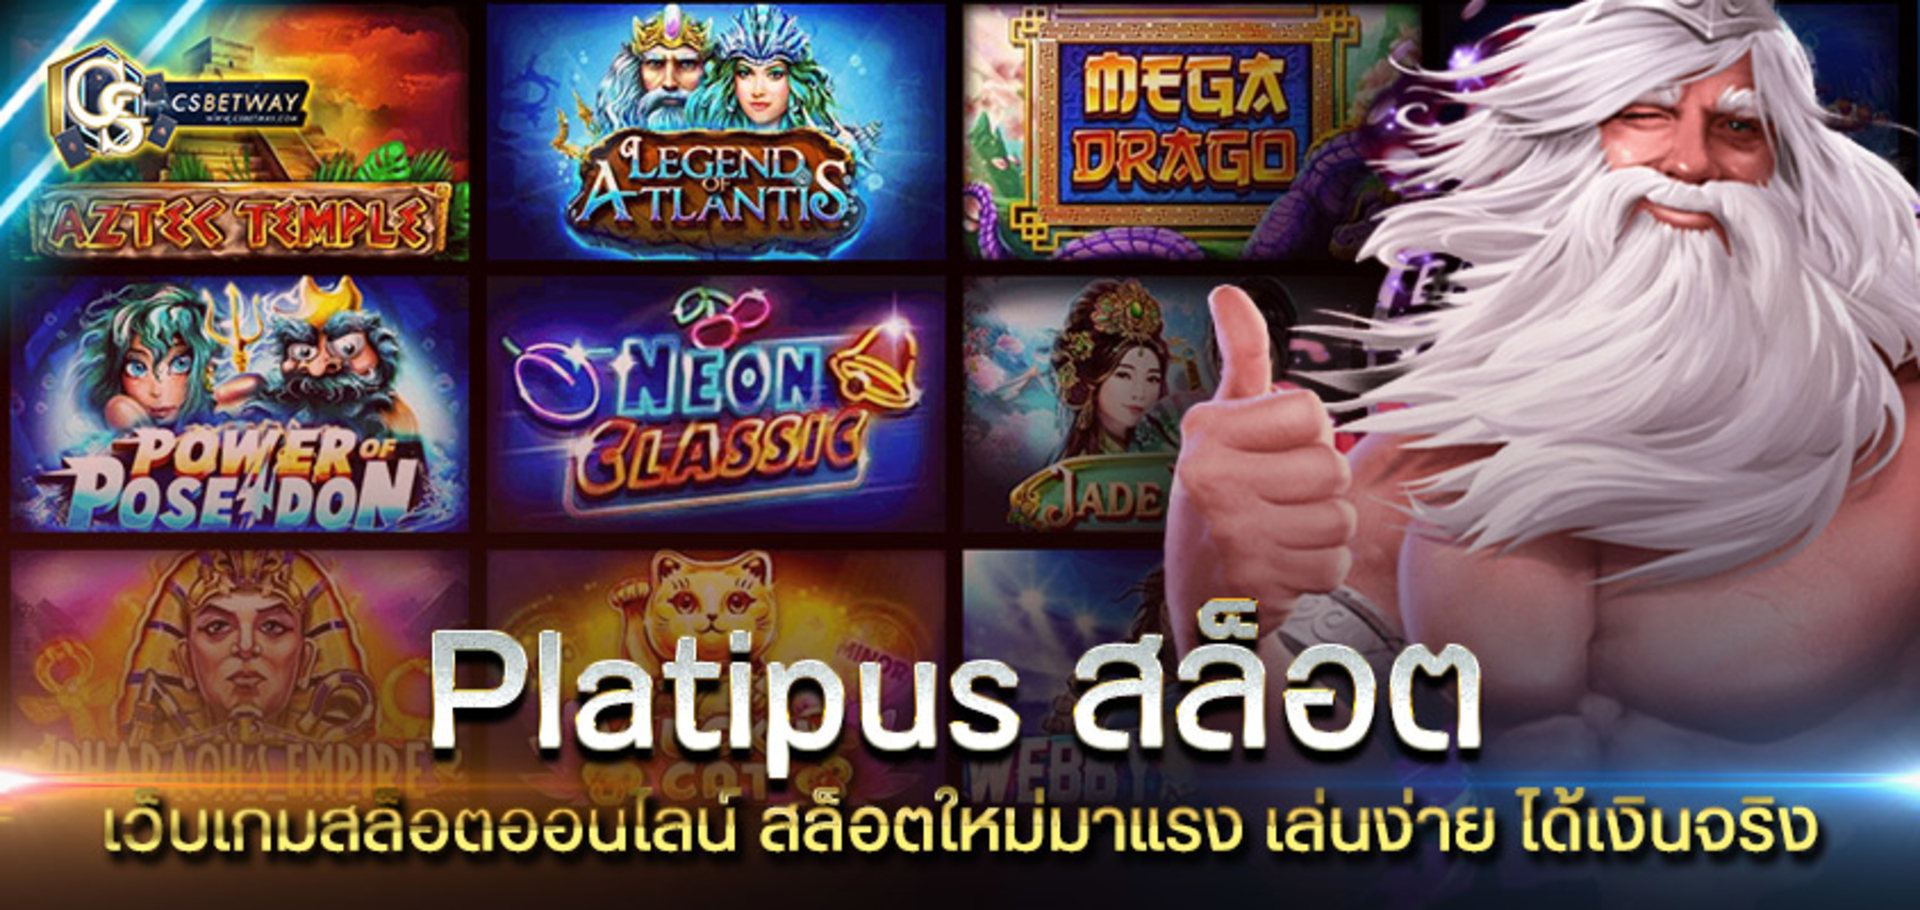 Platipus สล็อต เว็บเกมสล็อตออนไลน์ ใหม่มาแรง platipus สล็อตเล่นง่าย แตกเยอะ ได้เงินจริง 